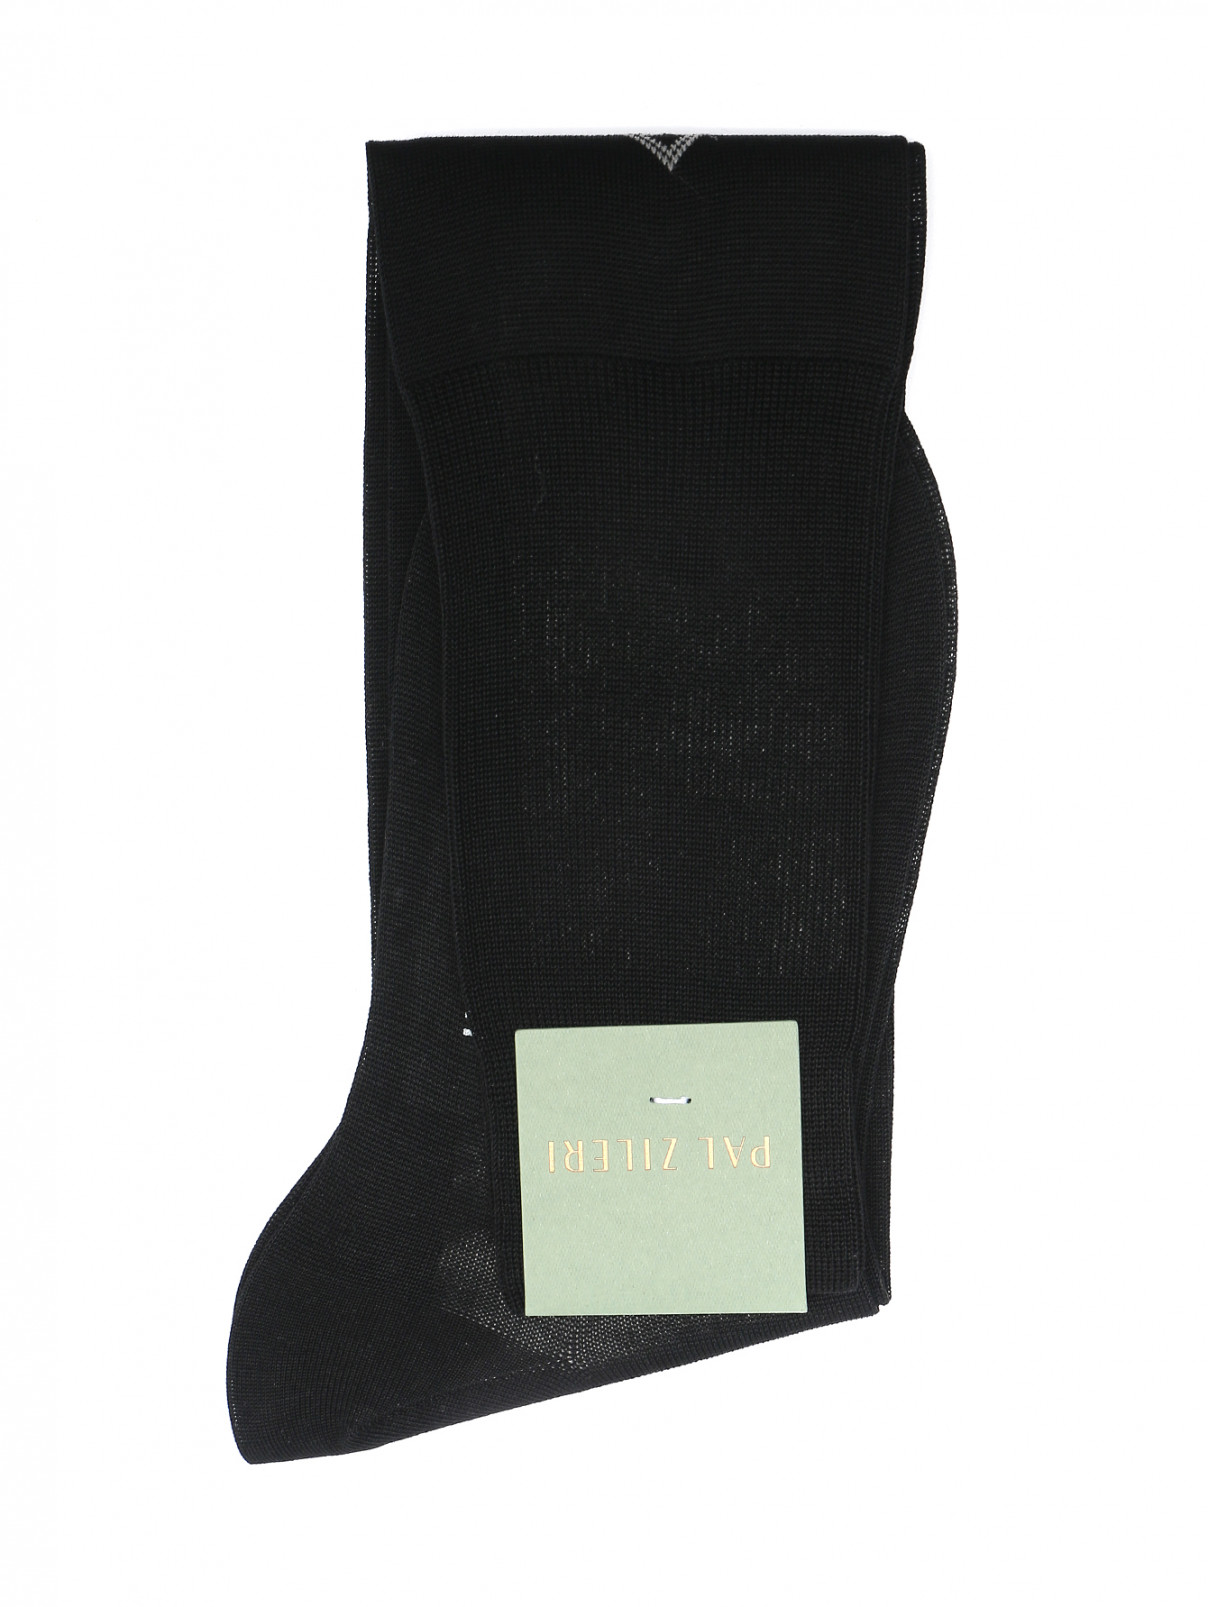 Однотонные носки из хлопка Pal Zileri  –  Общий вид  – Цвет:  Черный